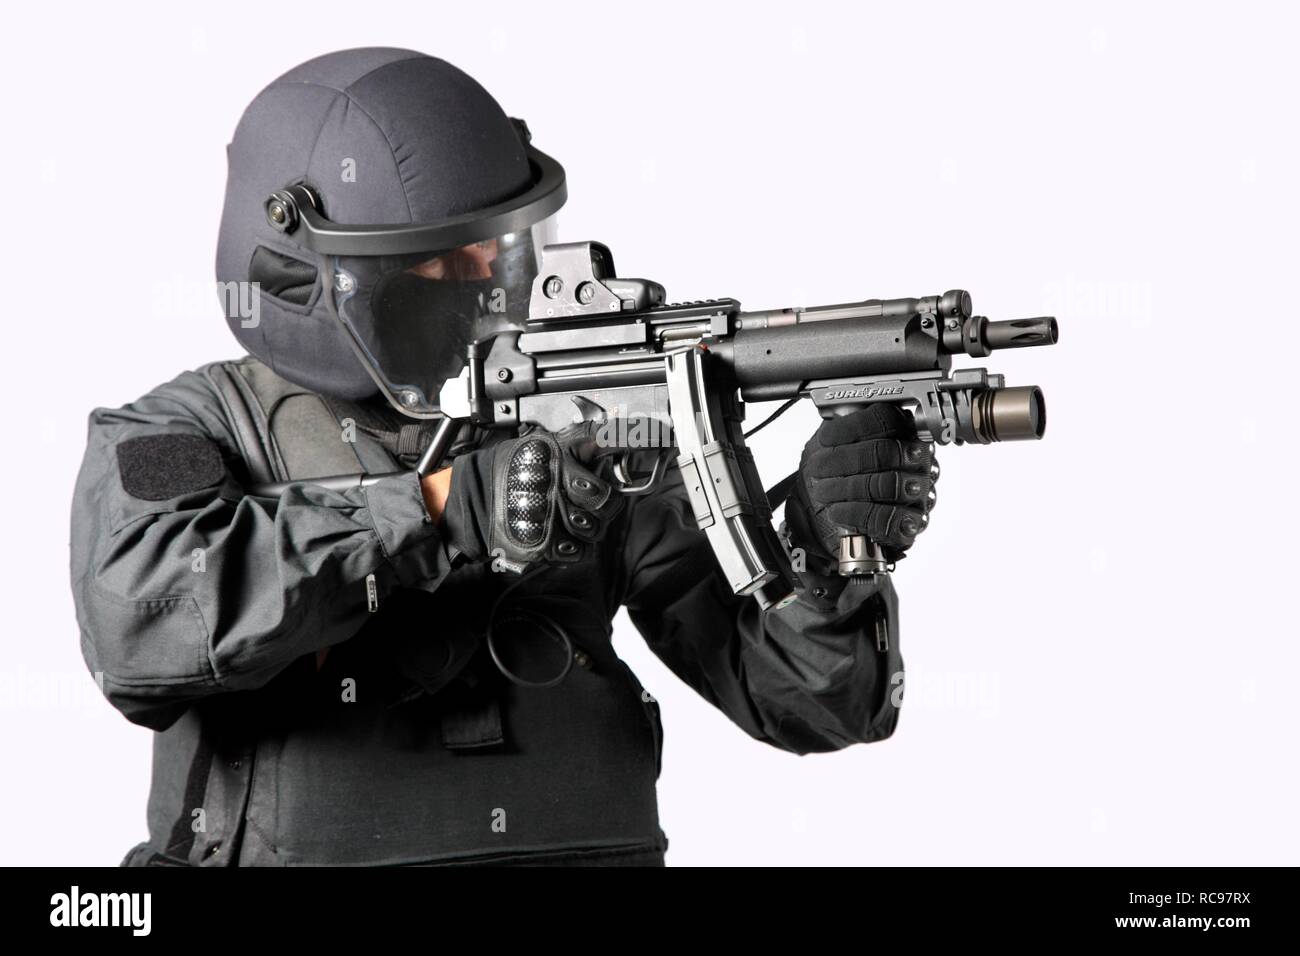 Polizia, Task Force speciale, SEK, officer indossando pieno uniforme di protezione tenendo un Heckler & Koch MP5 mitragliatore Foto Stock